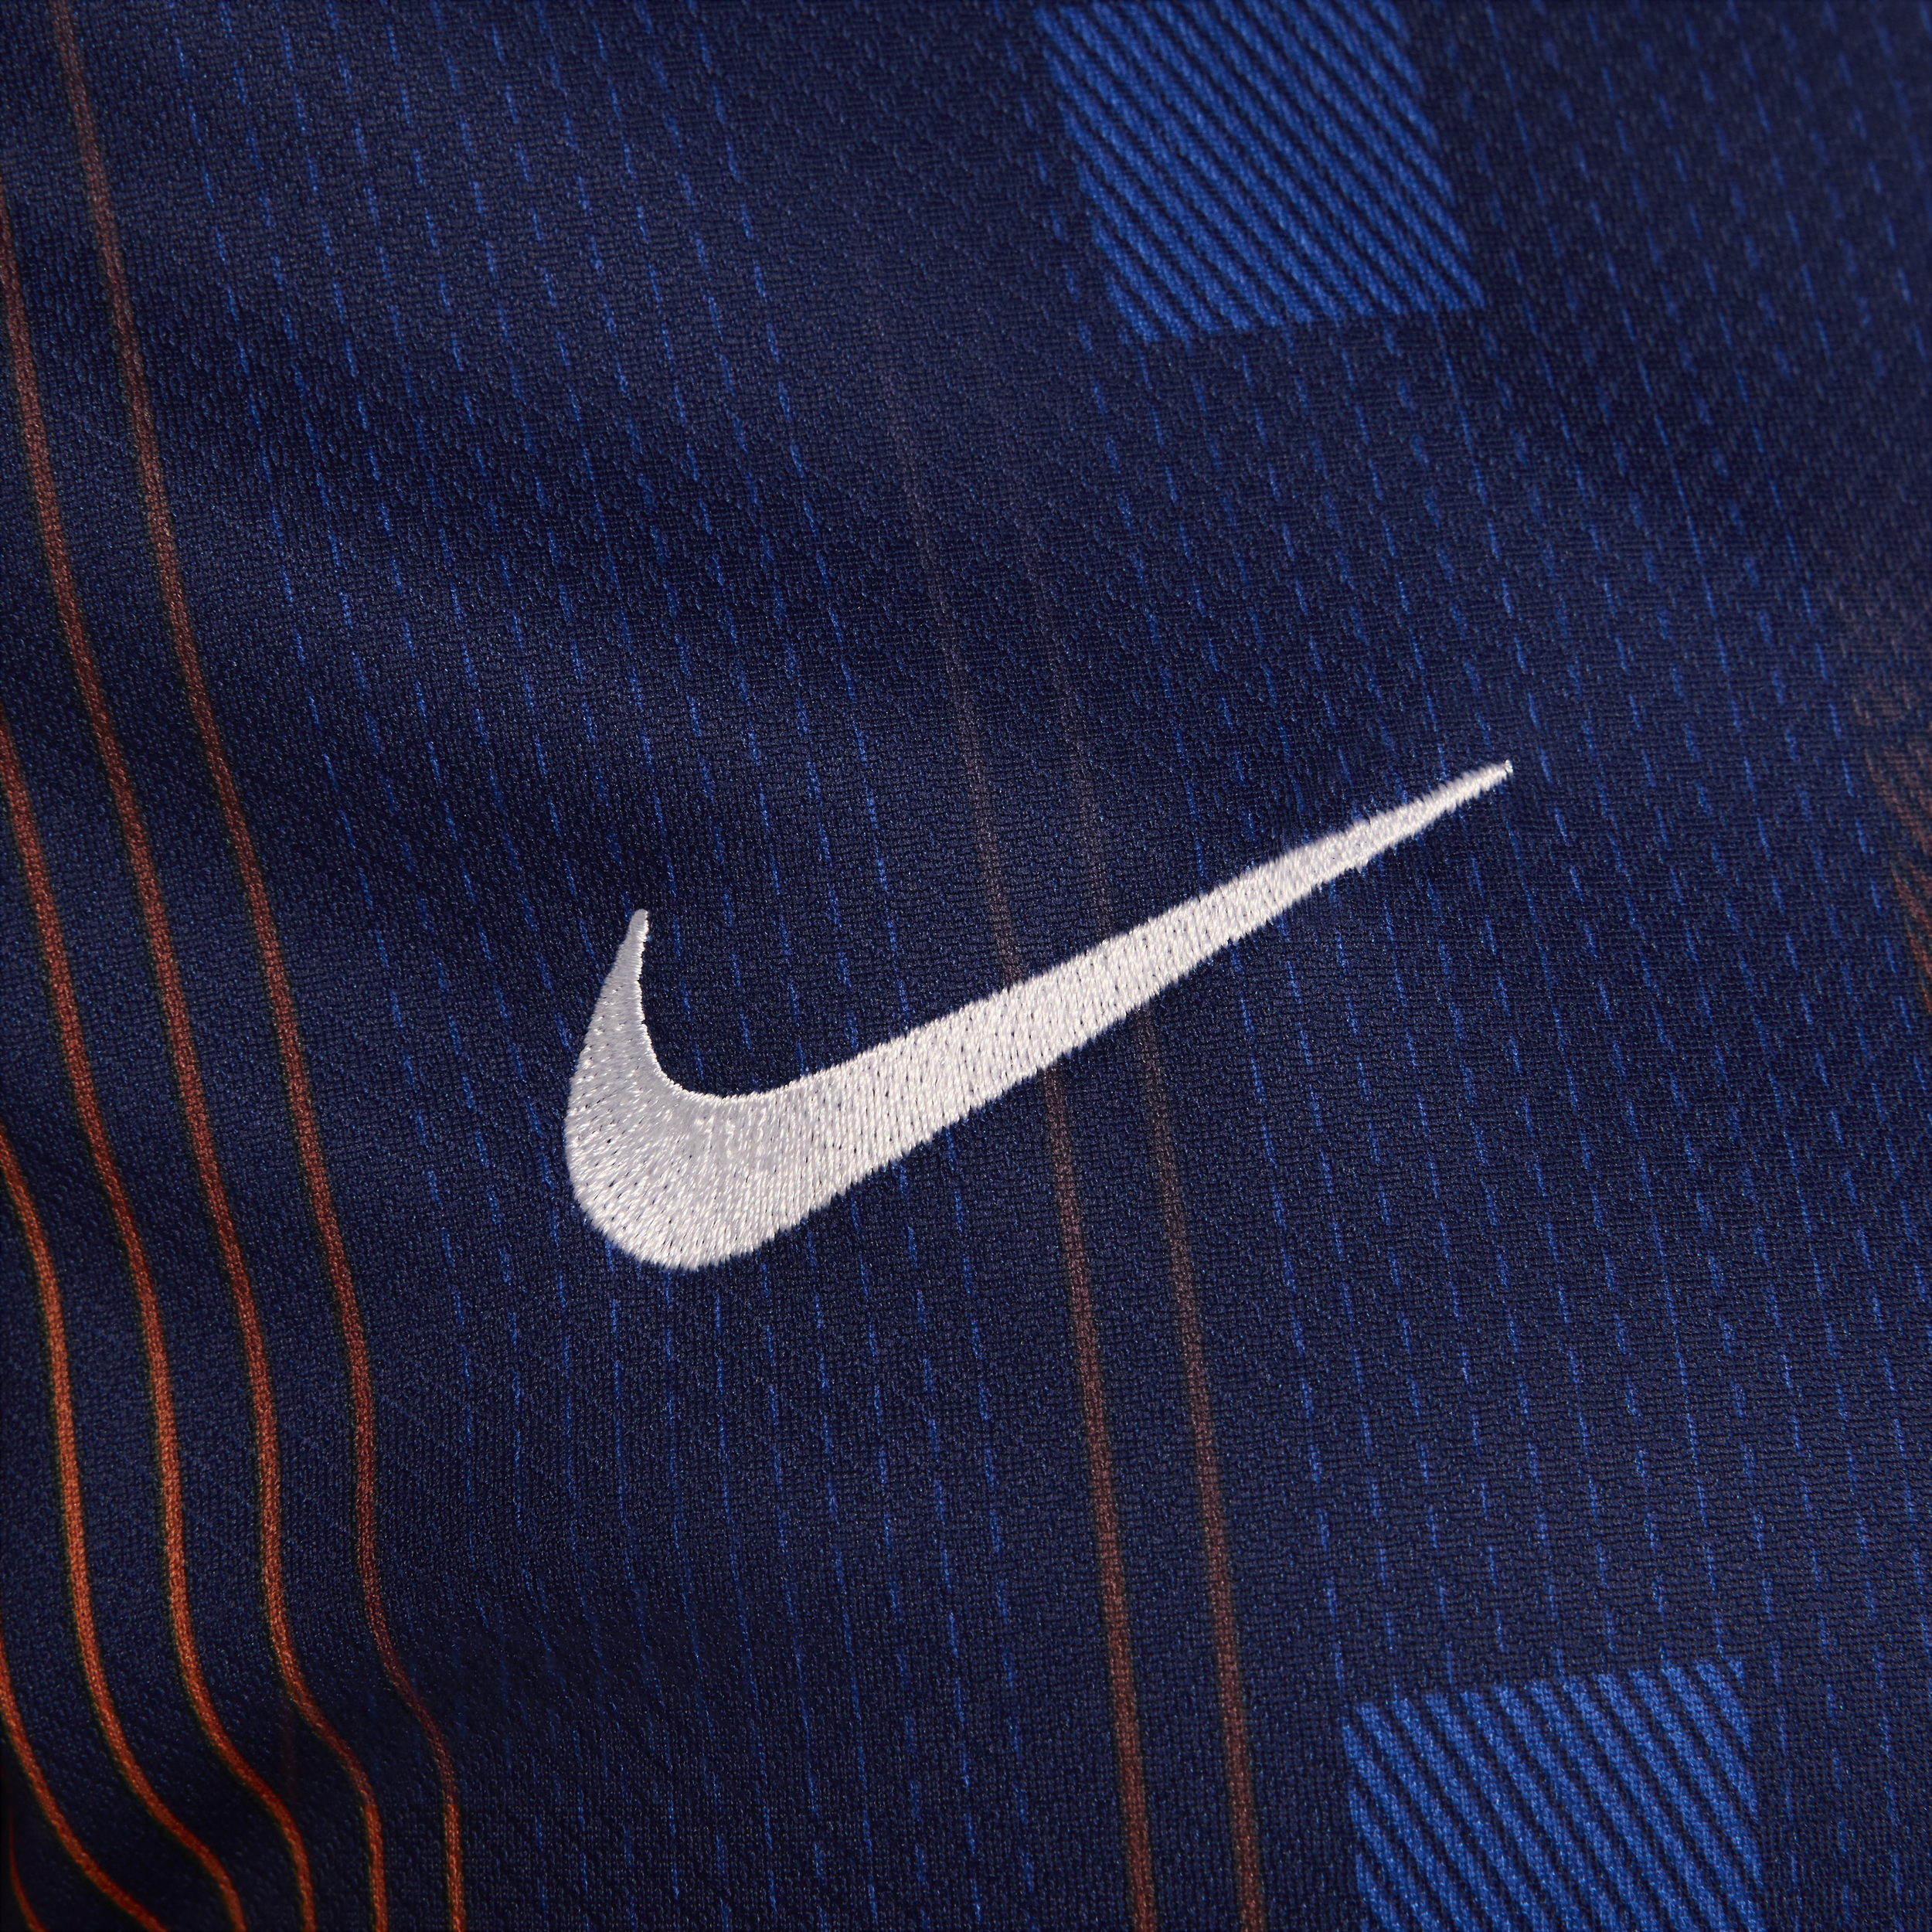 Nike Nederland (herenelftal) 2024 25 Stadium Uit Dri-FIT replica voetbalshirt voor dames Blauw